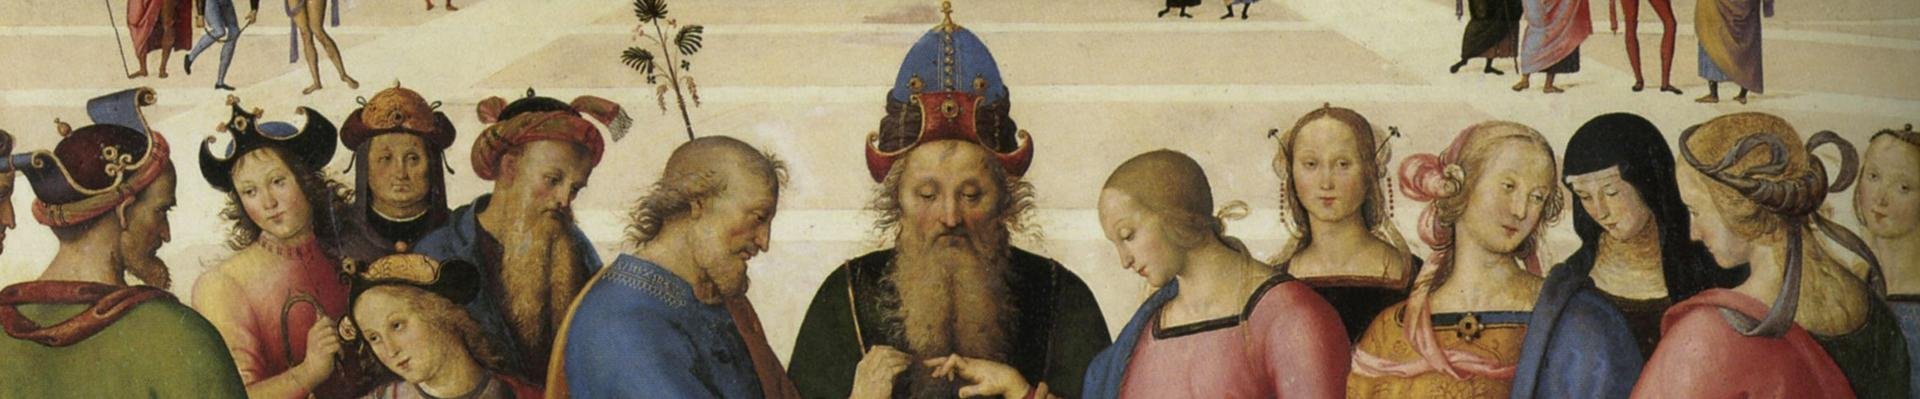 Het huwelijk van Jozef en Maria door Perugino